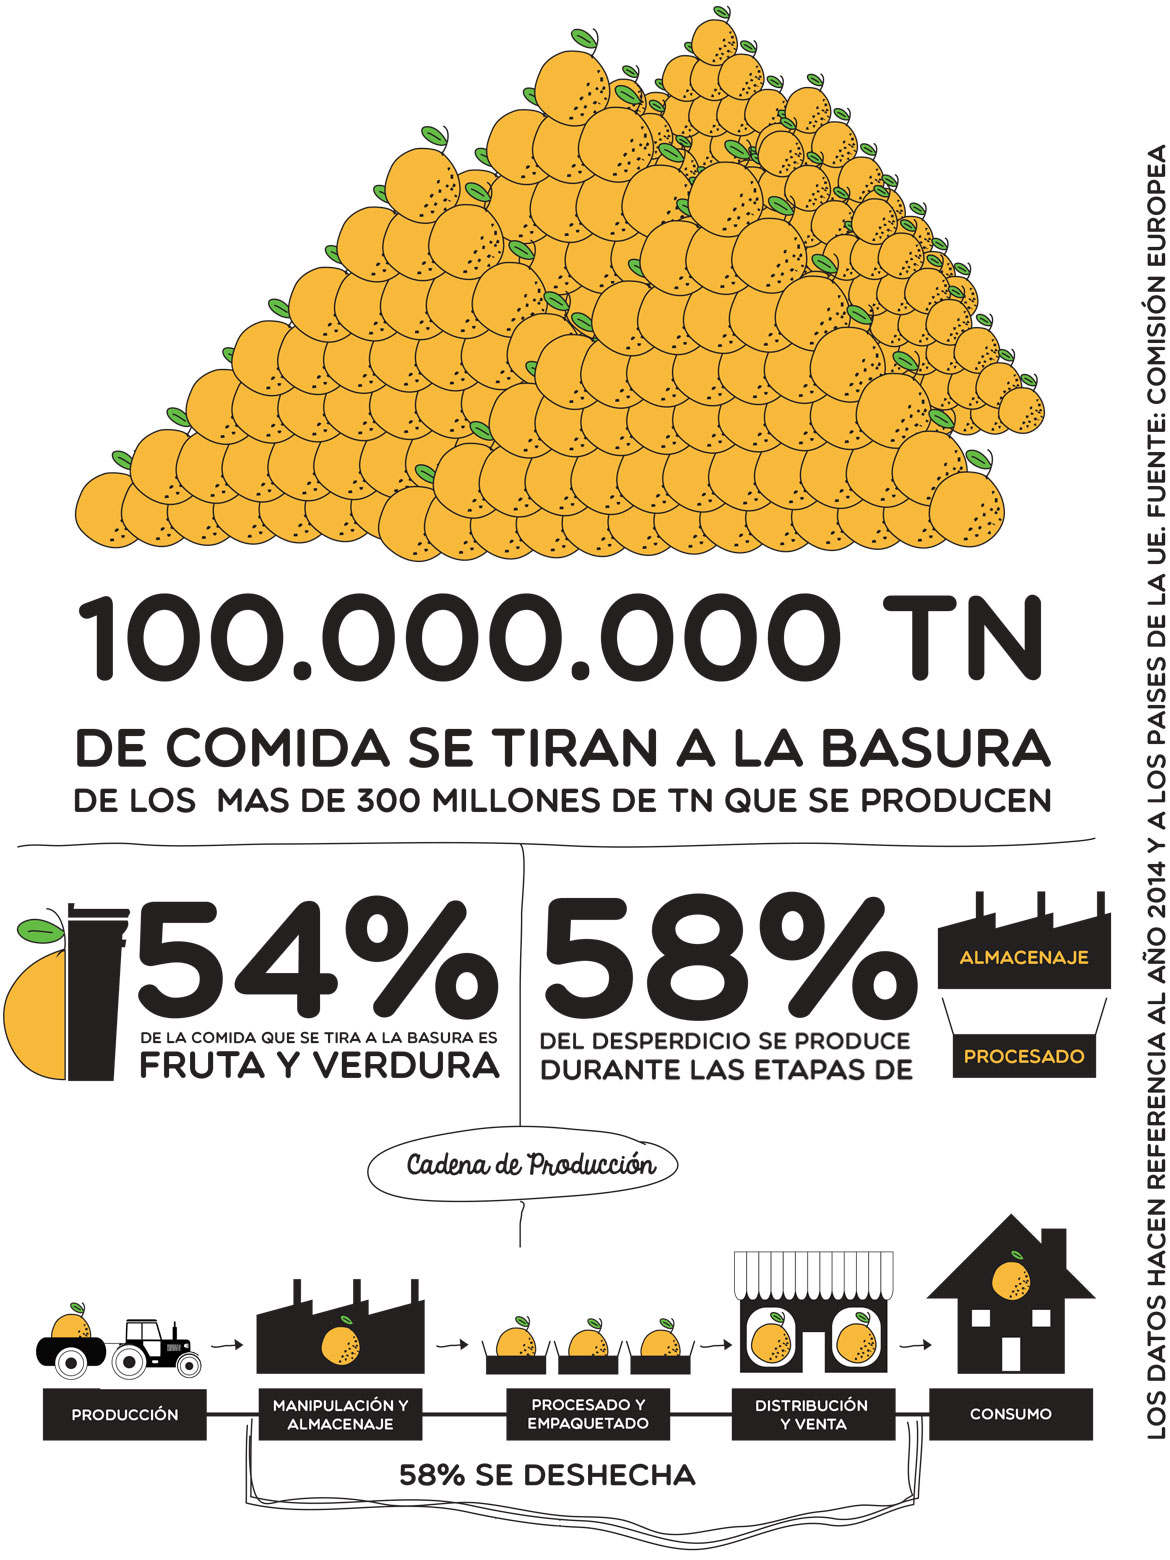 100.000.000 TN de comida se tiran a la basura de los mas de 300 millones de TN de se producen, 54% de la comida que se tira a la basura es fruta y verdura, 58% del desperdicio se produce durante las etapas de almacenaje y procesado.